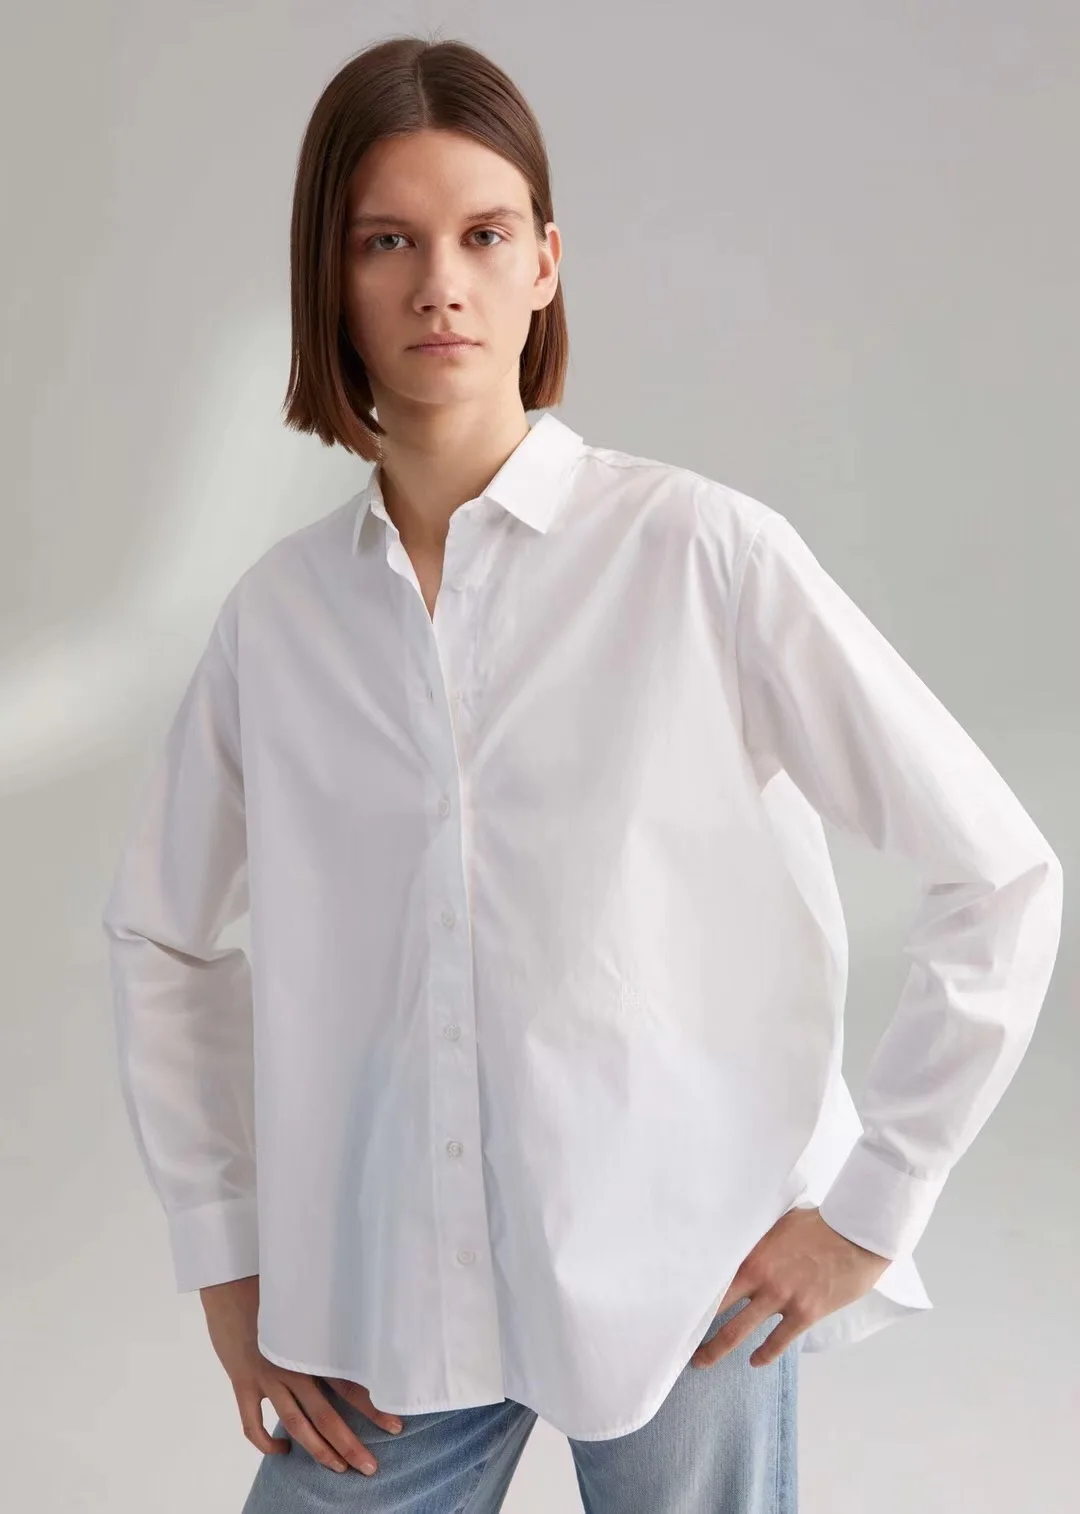 Весенняя и летняя блузка Минималистичная свободная хлопковая белая рубашка для женщин